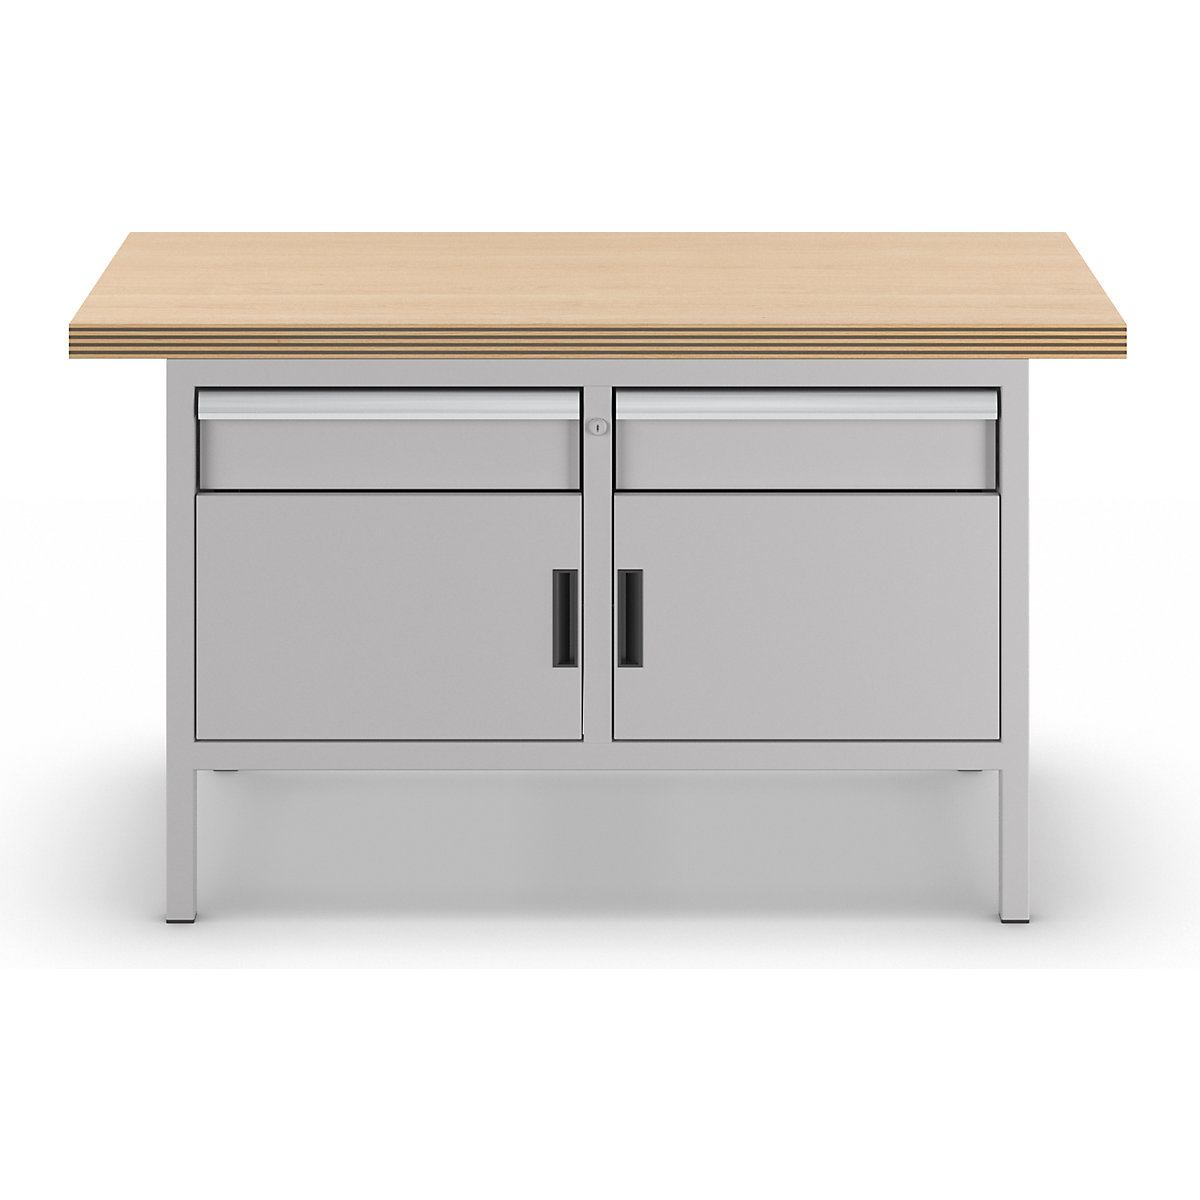 Stół warsztatowy, konstrukcja ramowa – LISTA (Zdjęcie produktu 3)-2